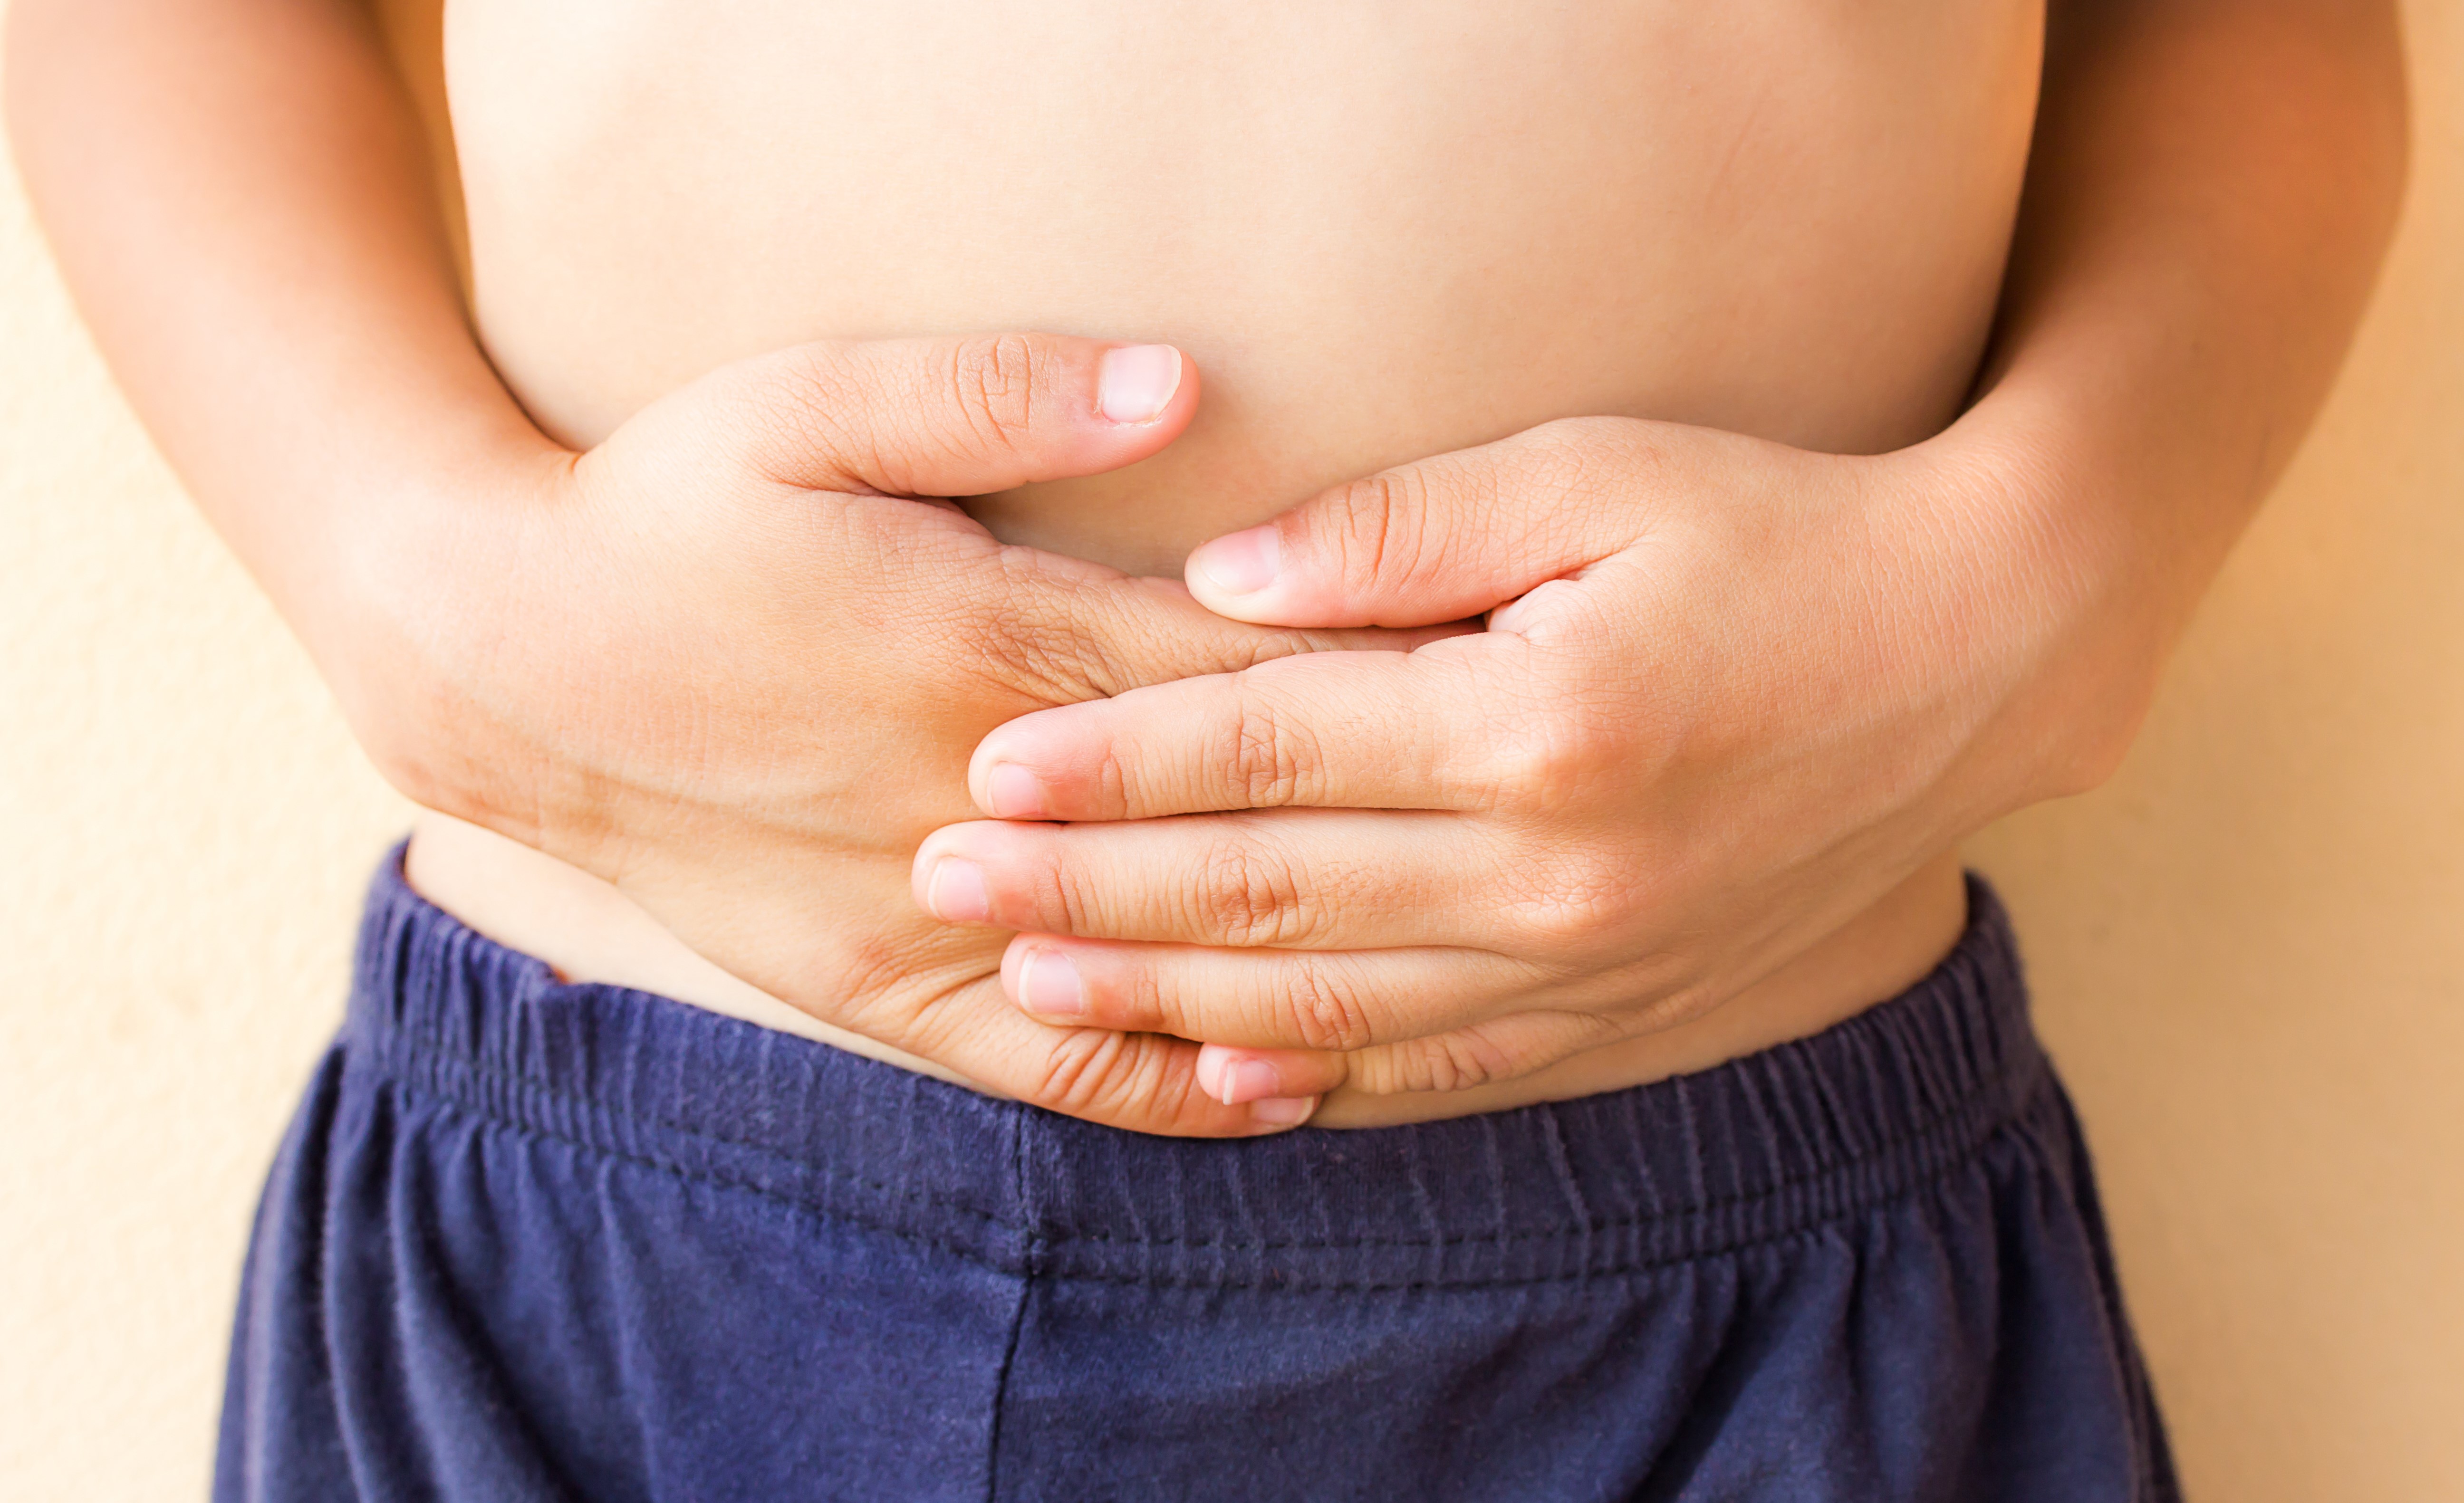 Đau bụng không phải là bệnh mà là triệu chứng của một cơn bệnh khác, cần được chẩn đoán chính xác và kịp thời để không dẫn đến những hậu quả xấu cho sức khỏe của bé